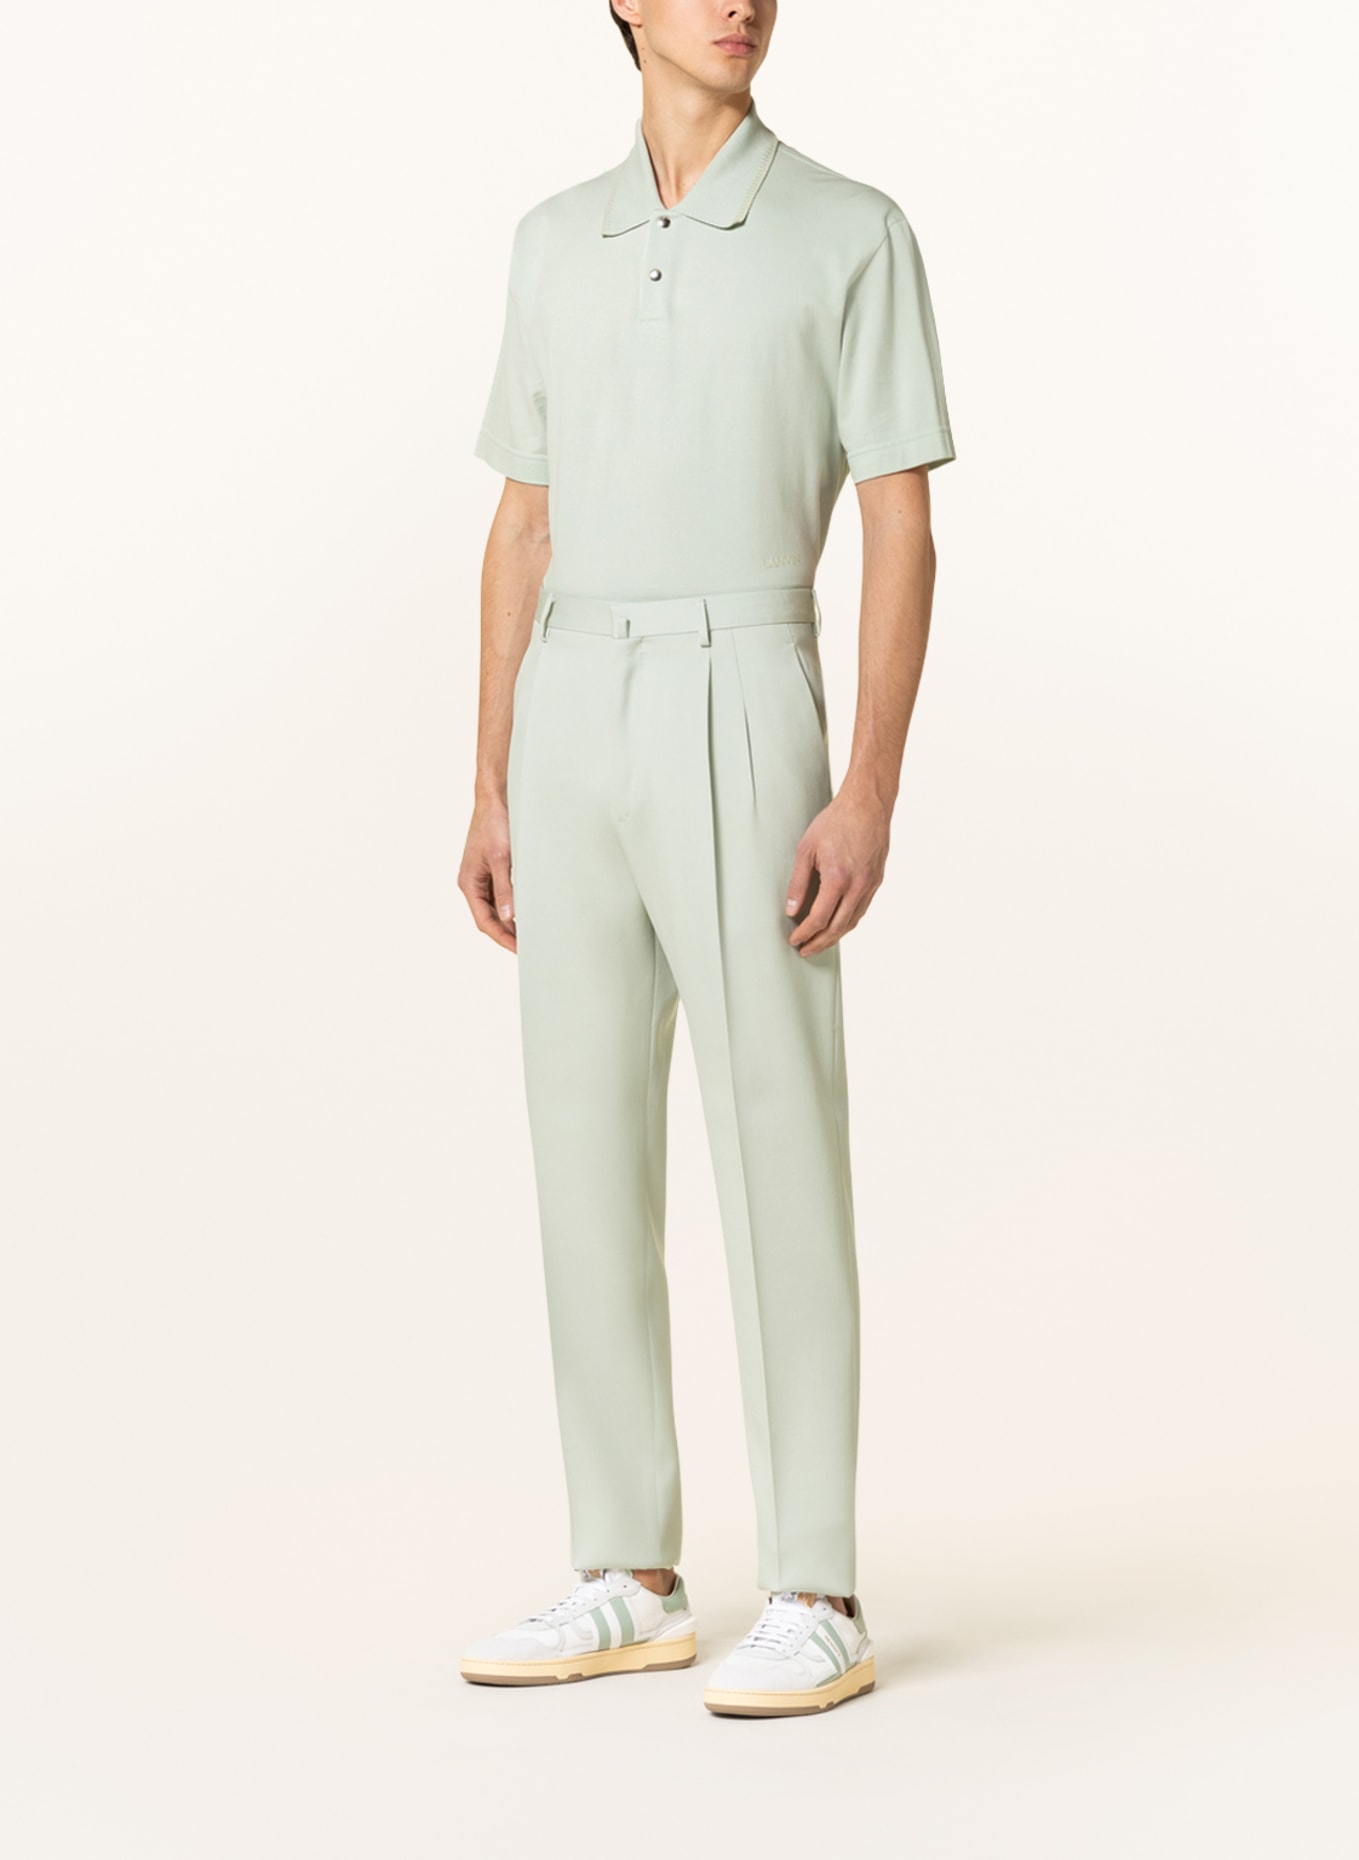 LANVIN Suit trousers regular fit, Color: 401 SAGE (Image 3)